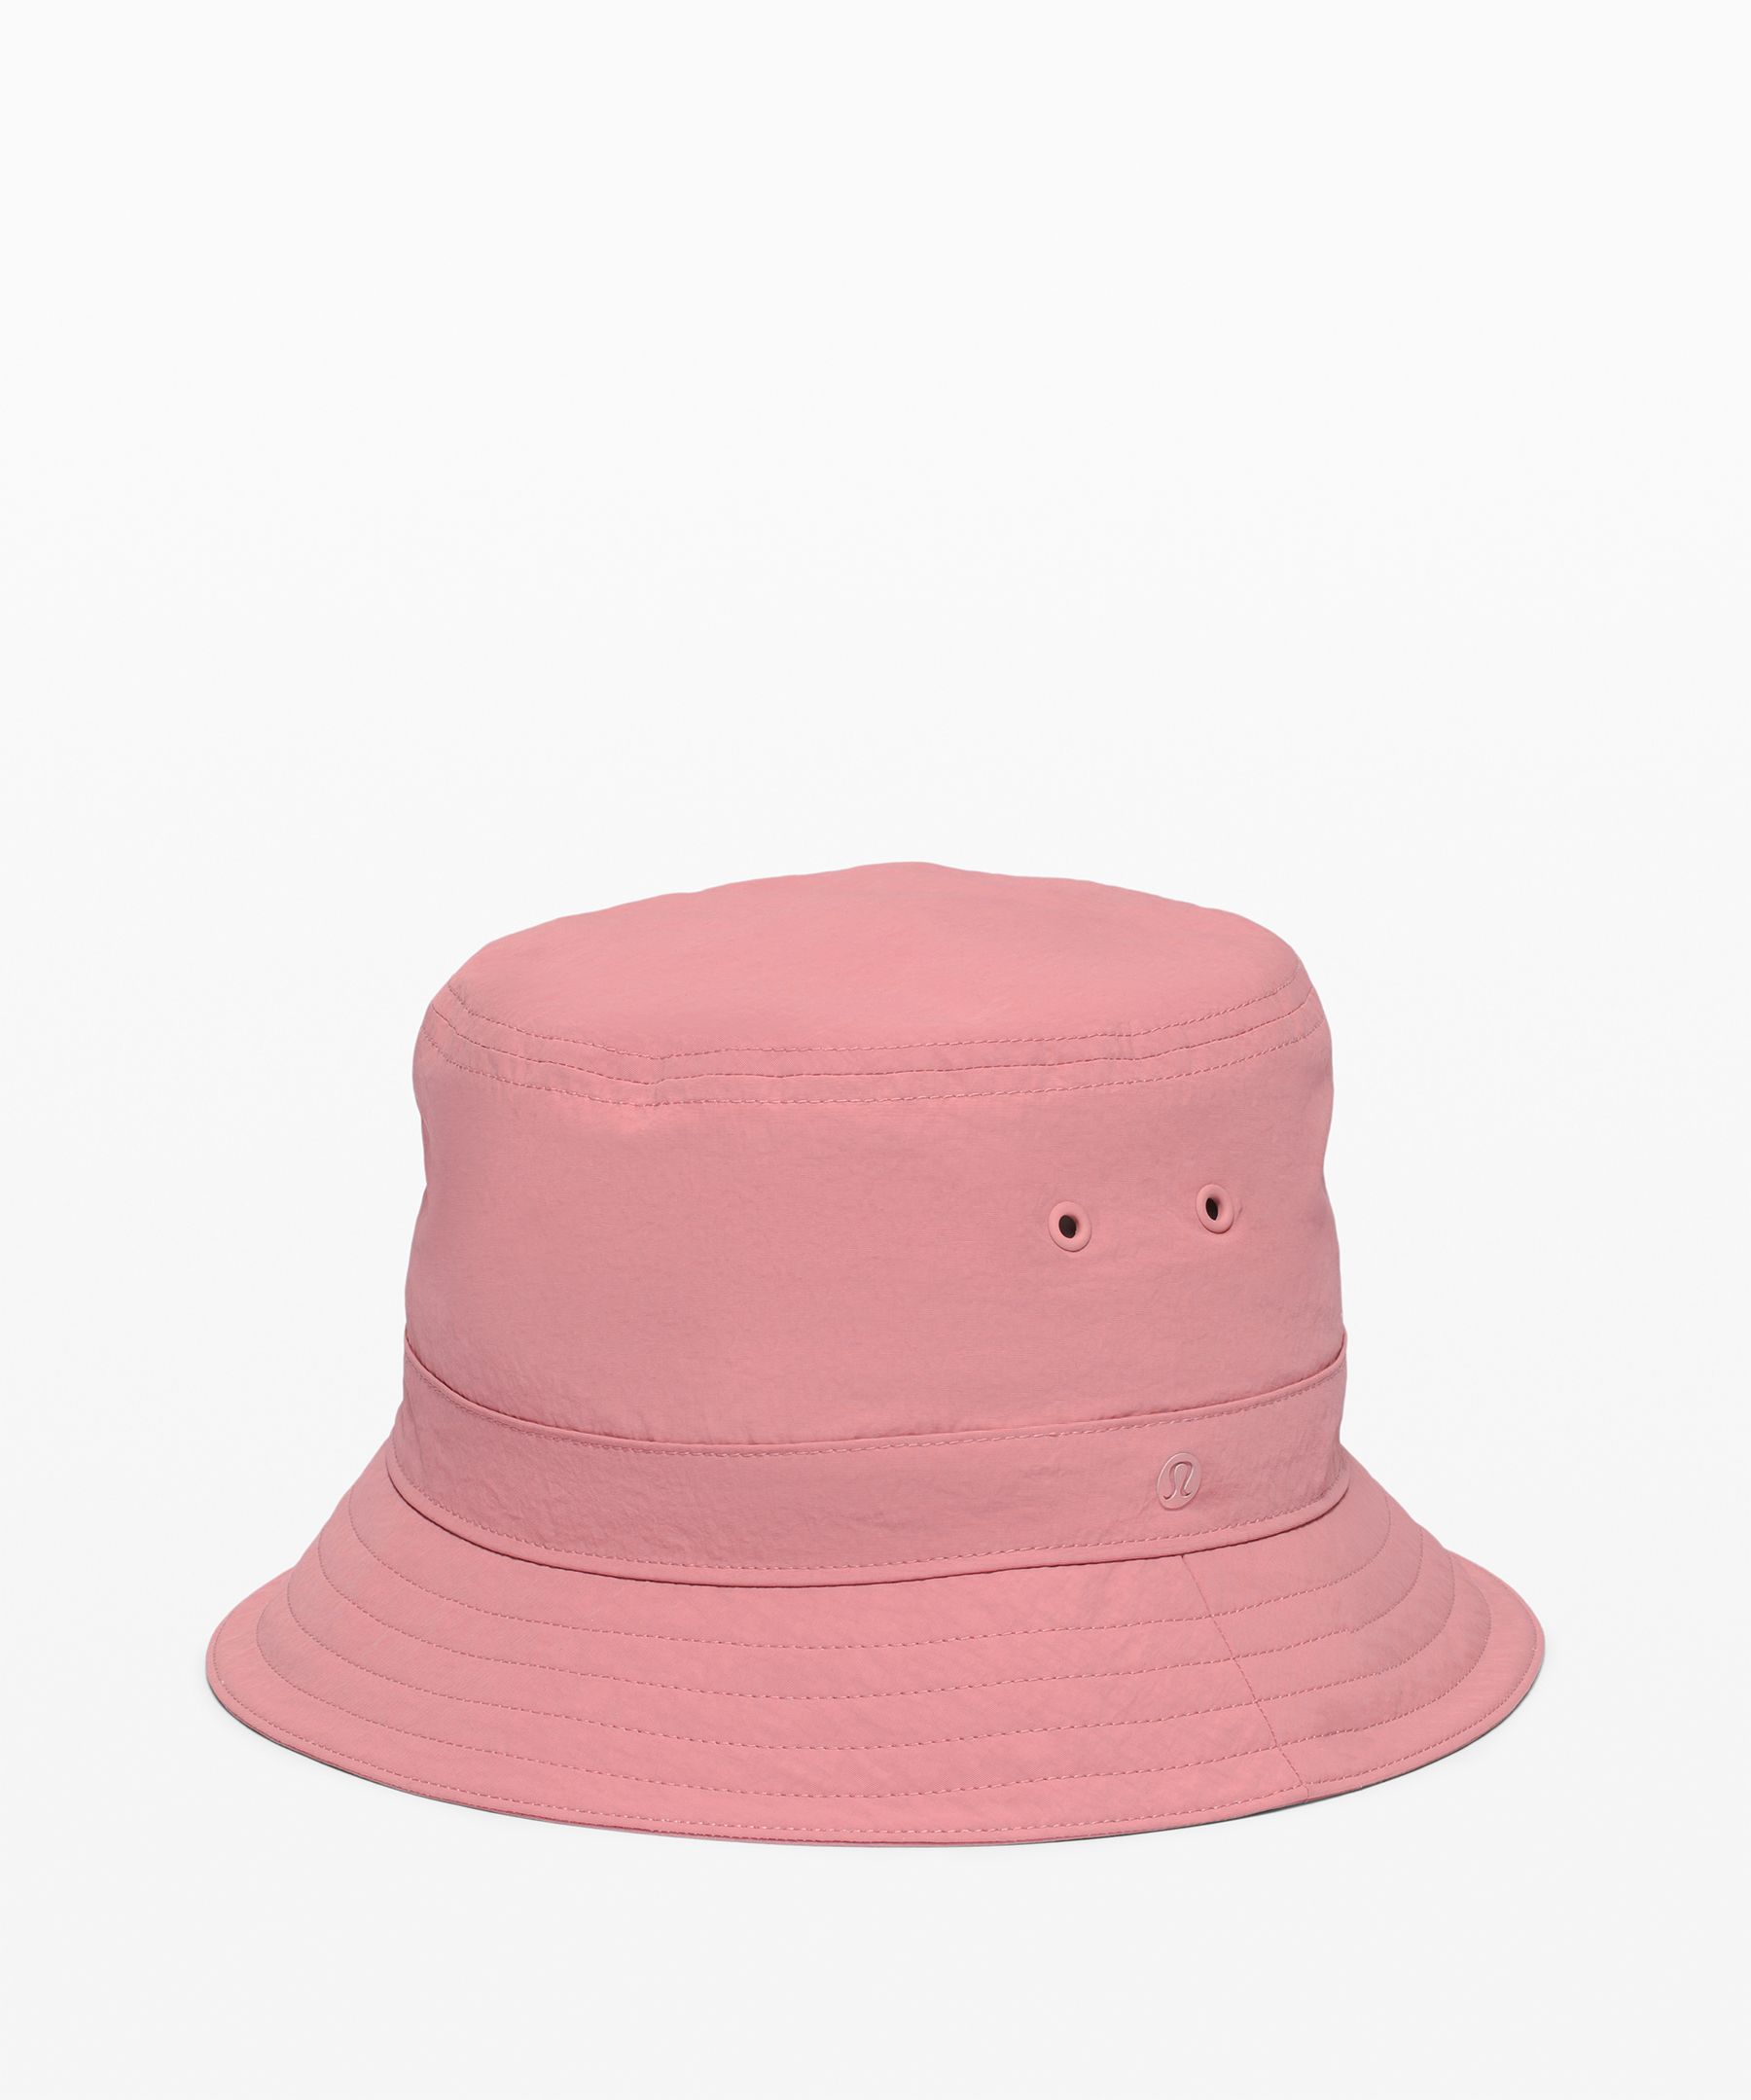 lululemon bucket hat women's size